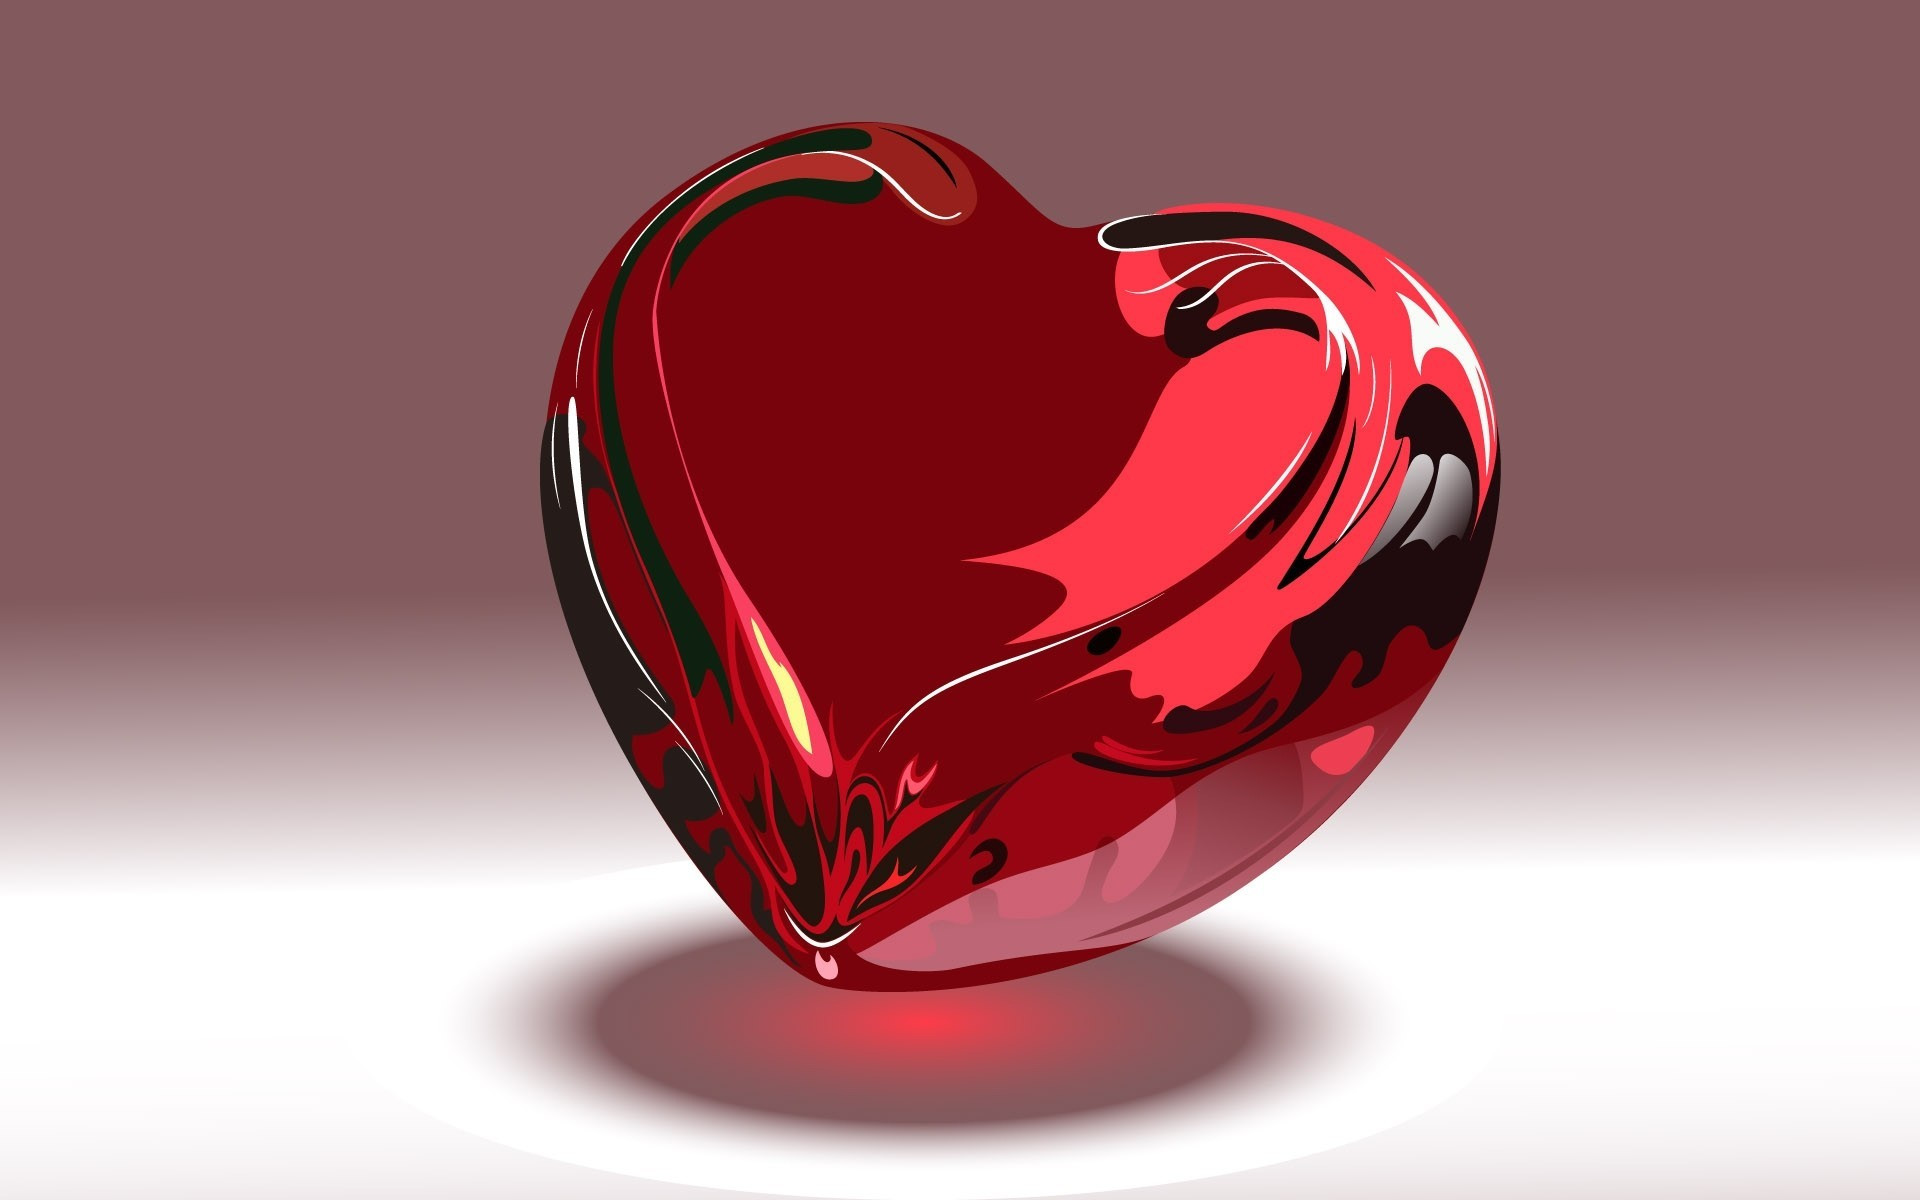 Hình nền trái tim: Bạn đang tìm kiếm một hình nền tuyệt đẹp để tôn lên tình yêu và sự lãng mạn? Hãy xem chiếc hình nền trái tim với nhiều màu sắc và họa tiết độc đáo để mang đến cho bạn một phong cách mới mẻ và ấn tượng.